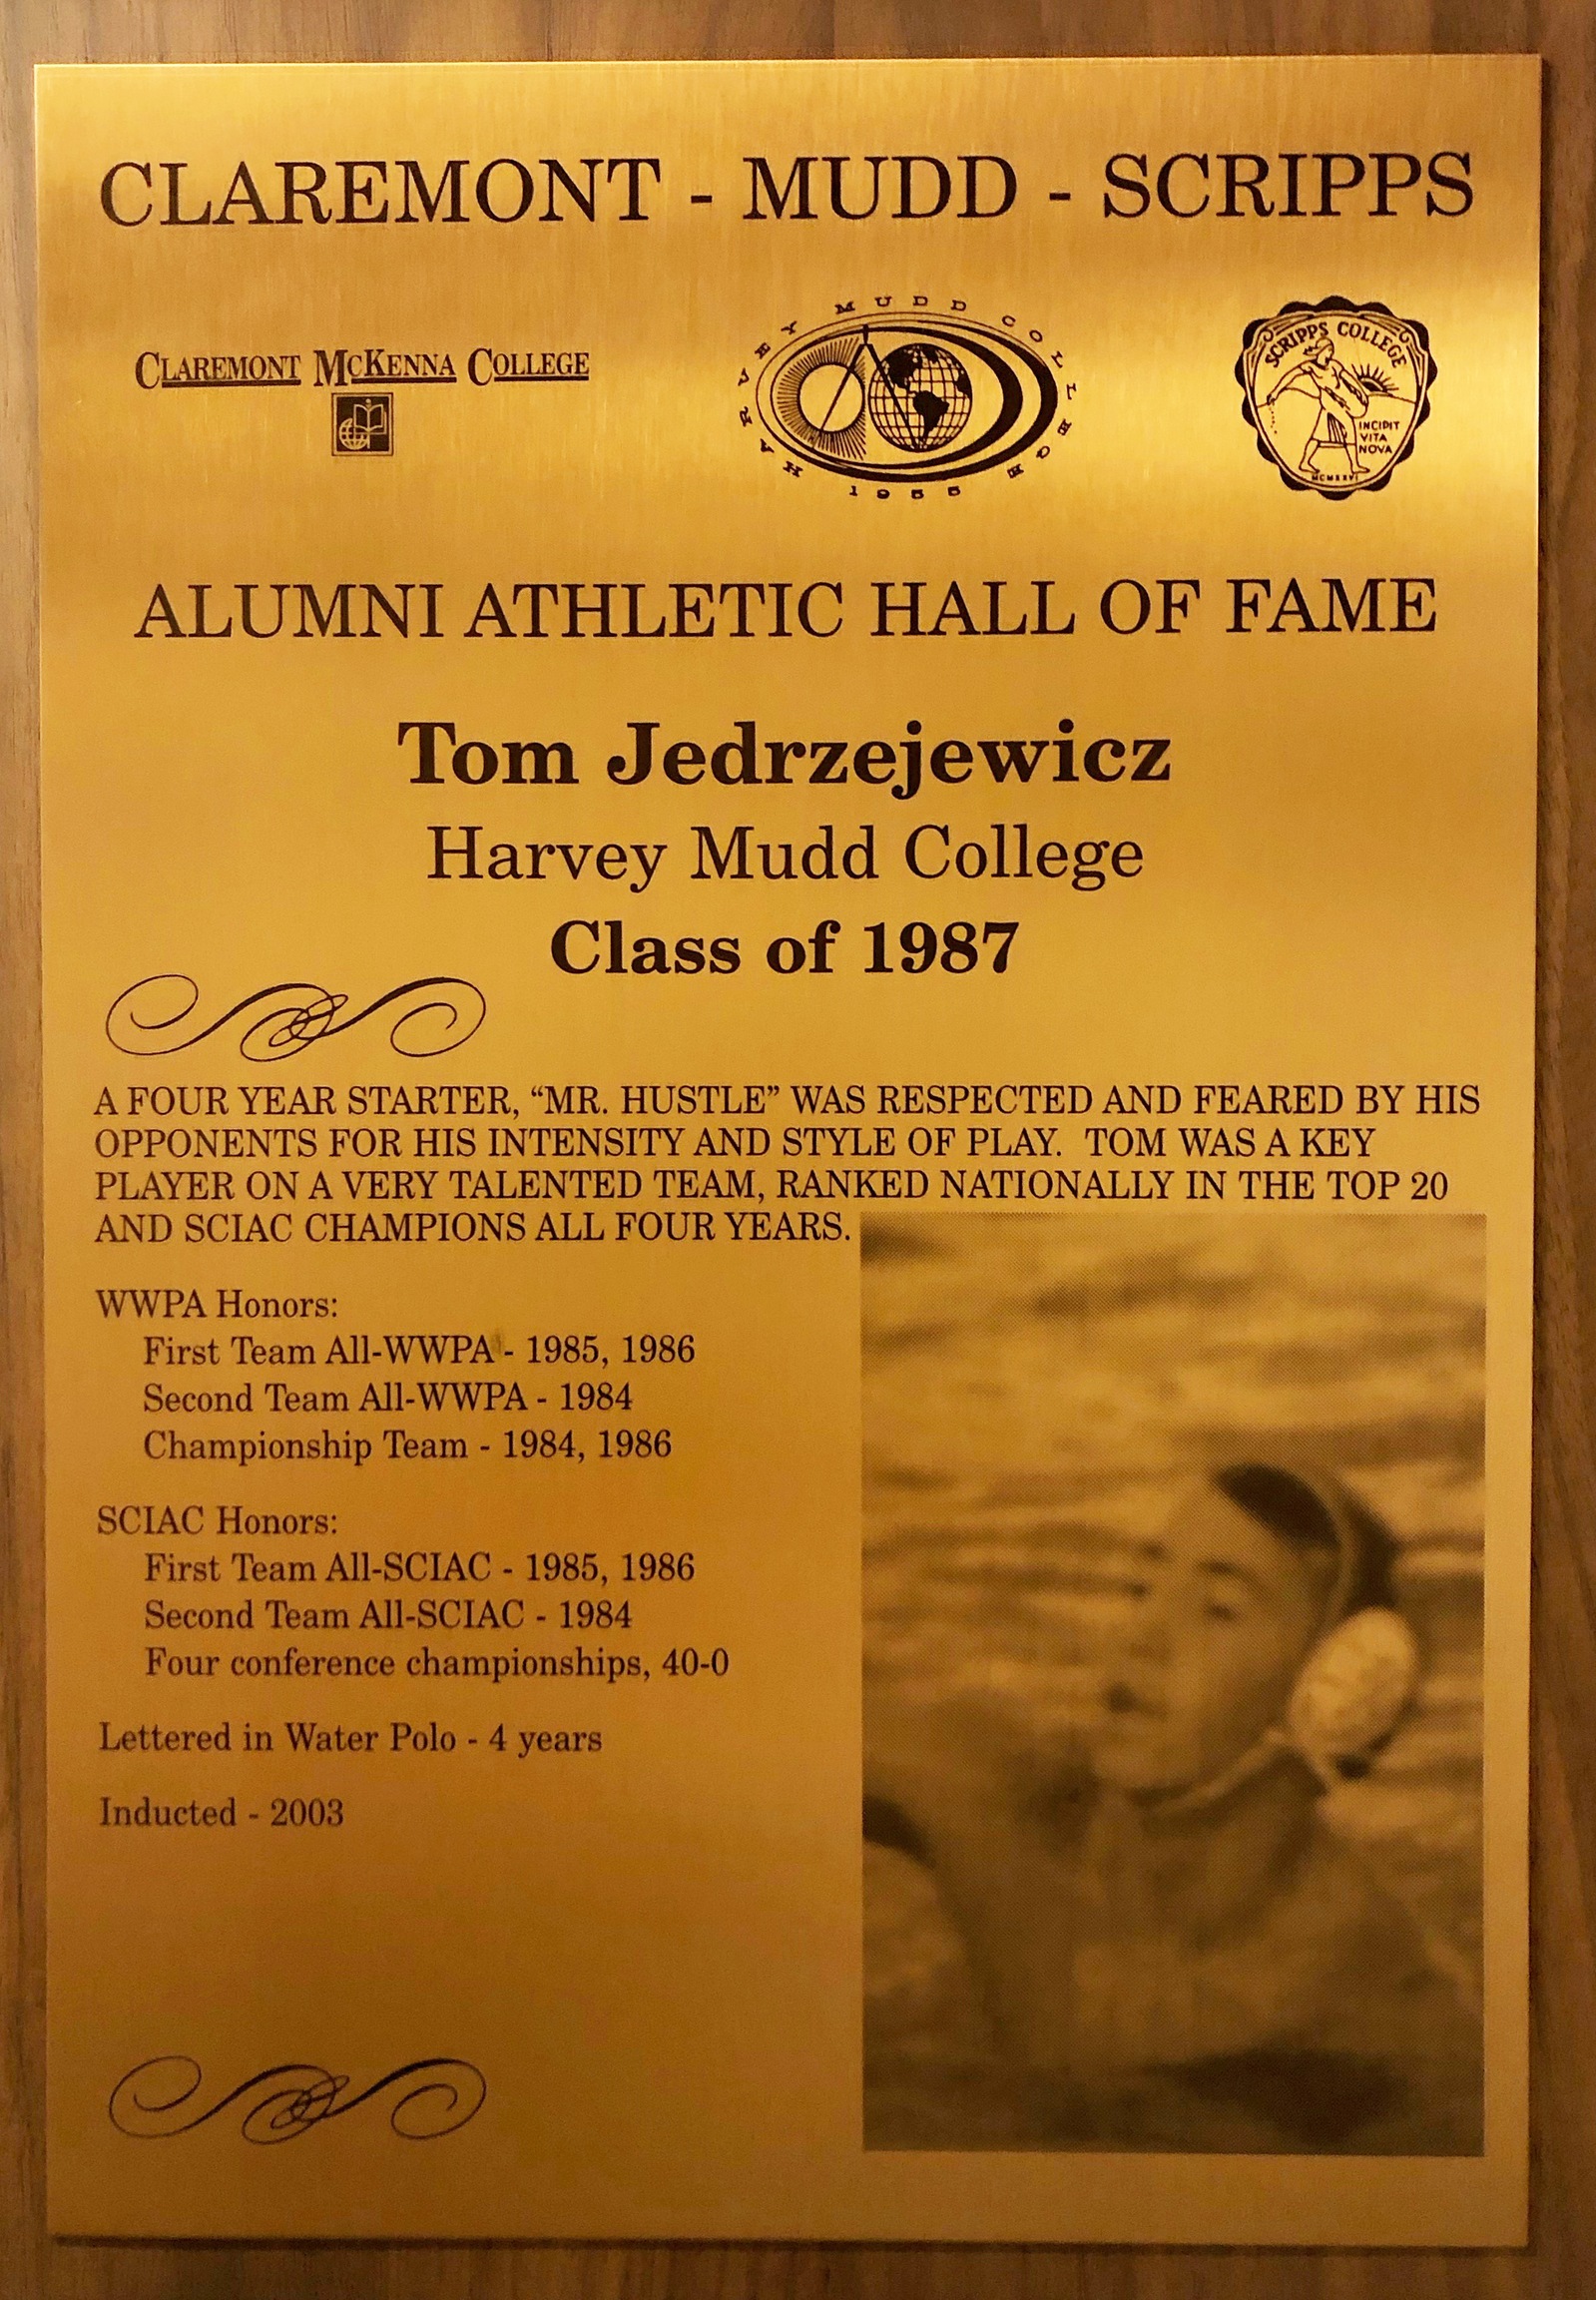 Tom Jedrezjewicz Hall of Fame plaque